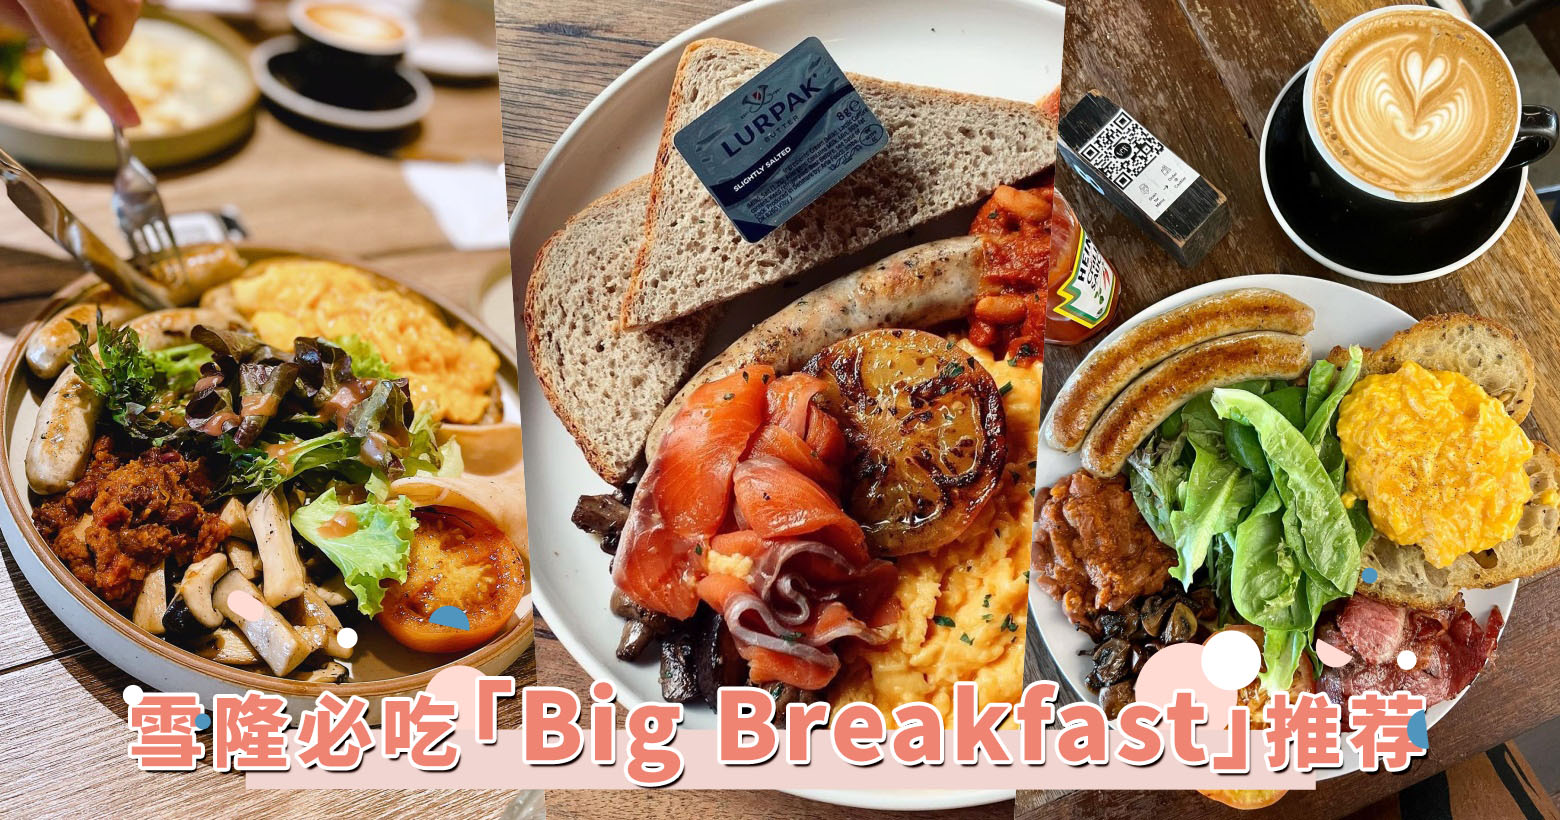 一日之计在于晨！雪隆必吃「Big Breakfast」推荐，元老级 cafe 大早餐甚至有多达 10 种配料！